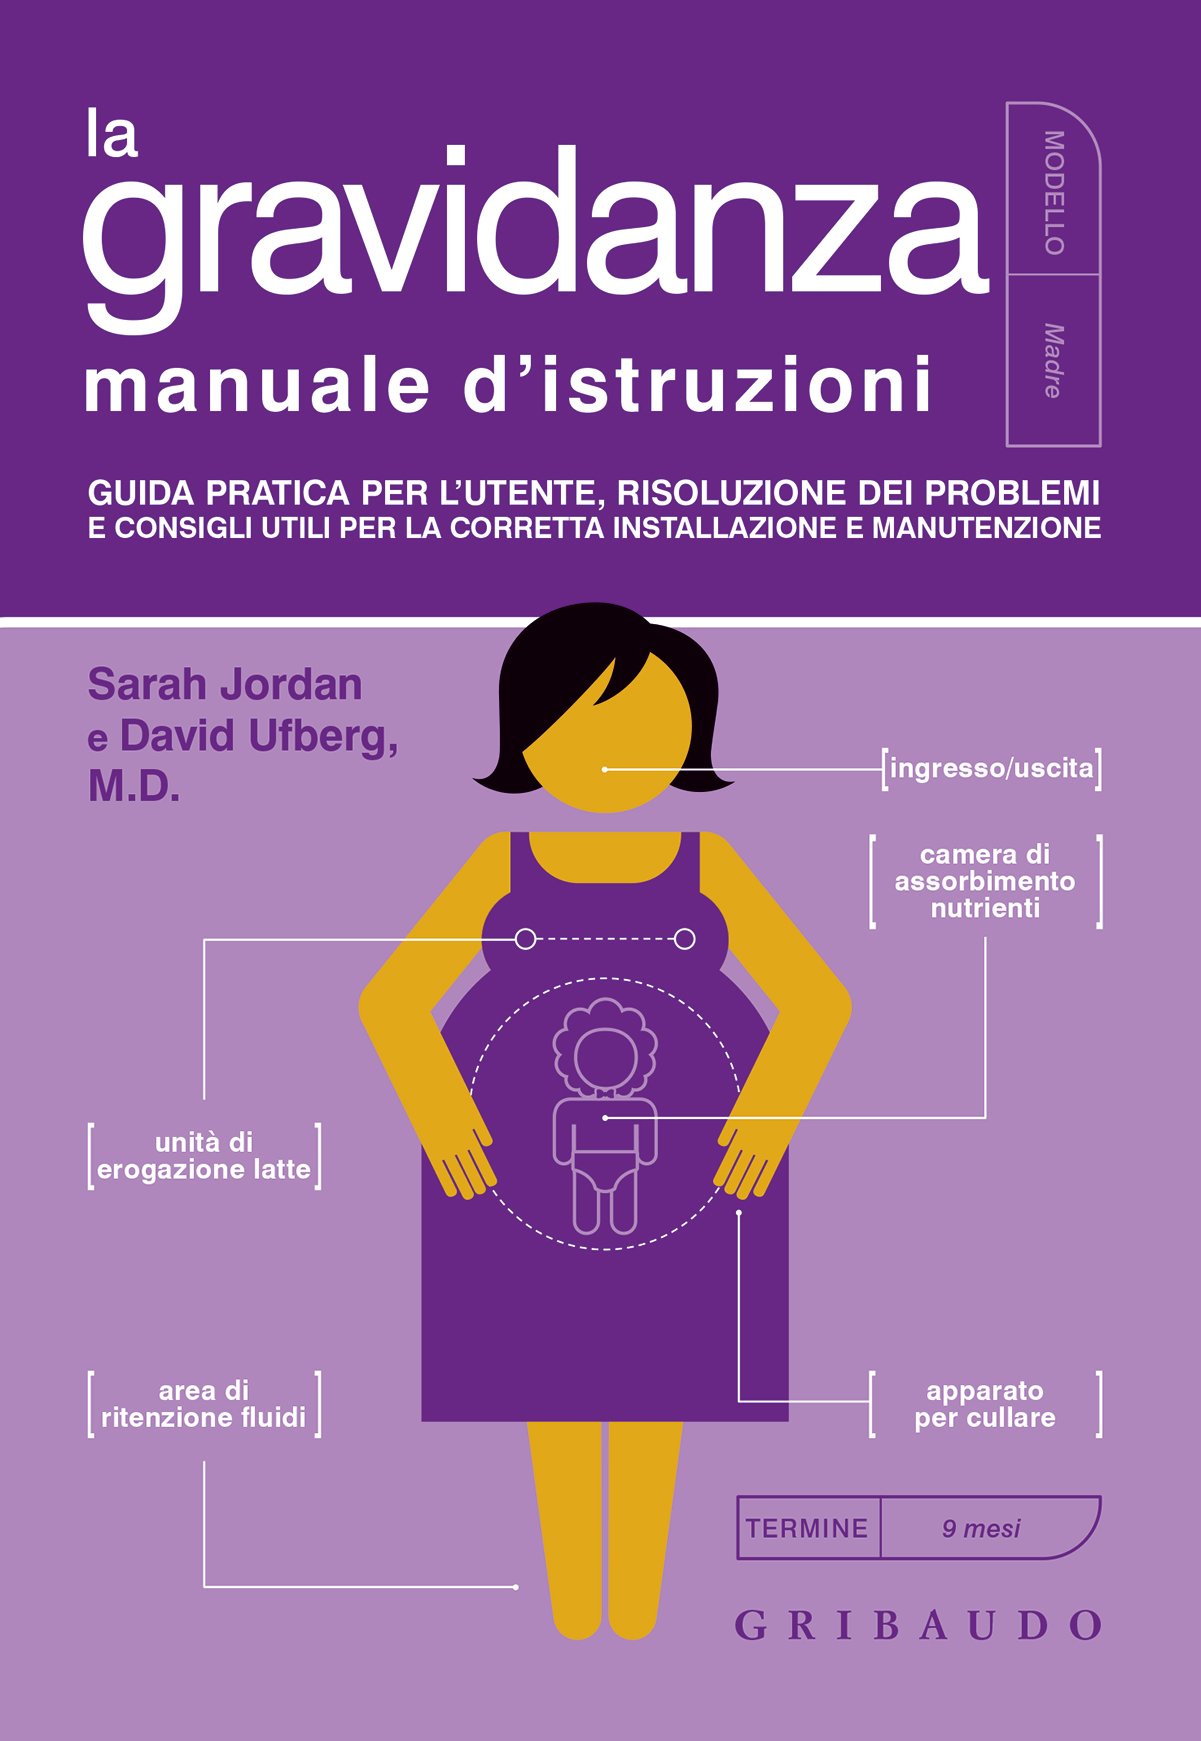 La gravidanza - manuale d'istruzioni